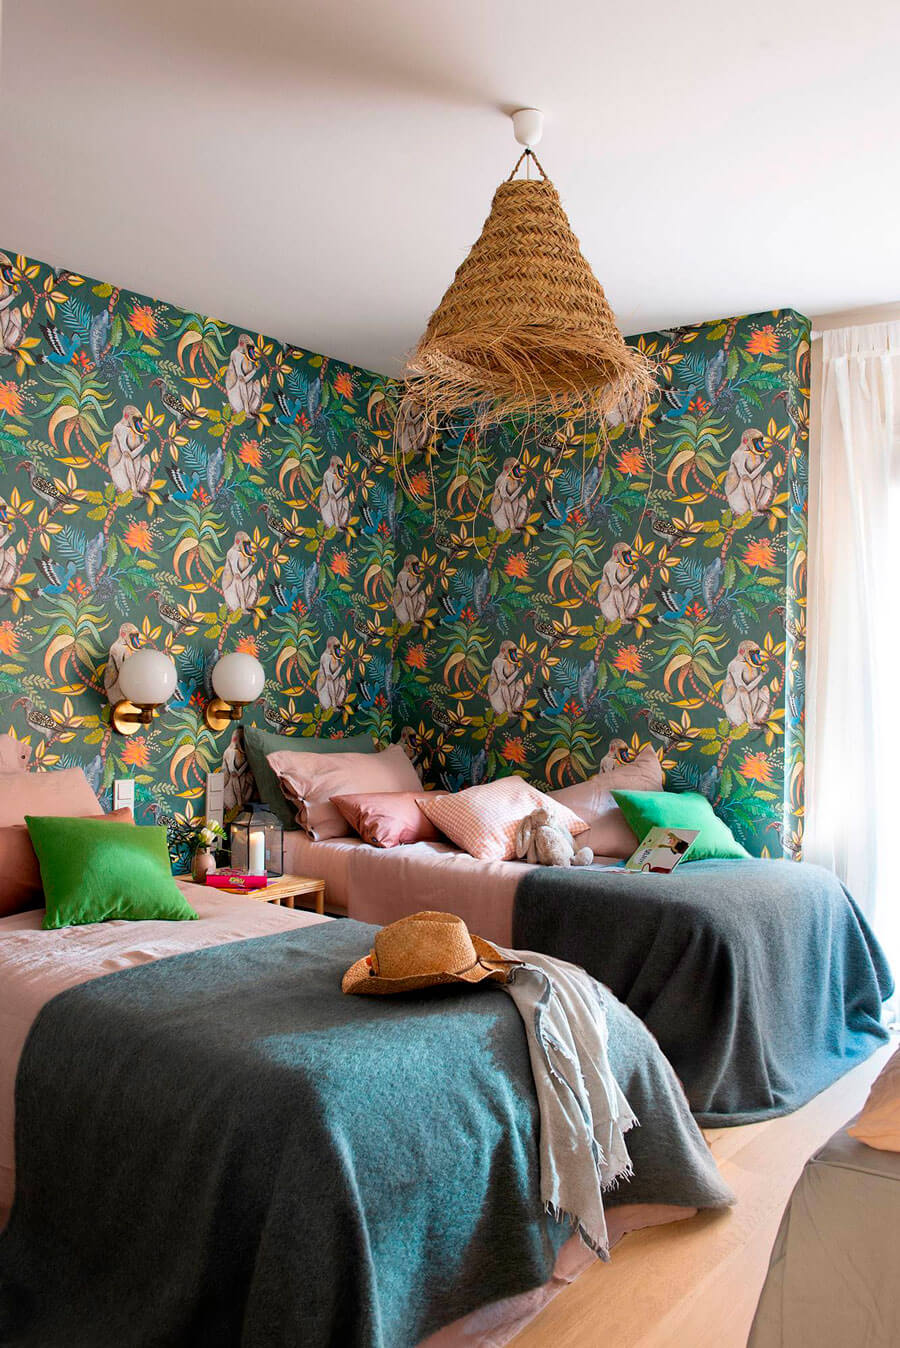 Dormitorio infantil con papel mural con ilustraciones de hojas, monos y plantas. Del techo cuelga una lámpara de fibras naturales. En el lugar también hay 2 camas con sábanas rosadas y cobertor verde oscuro.